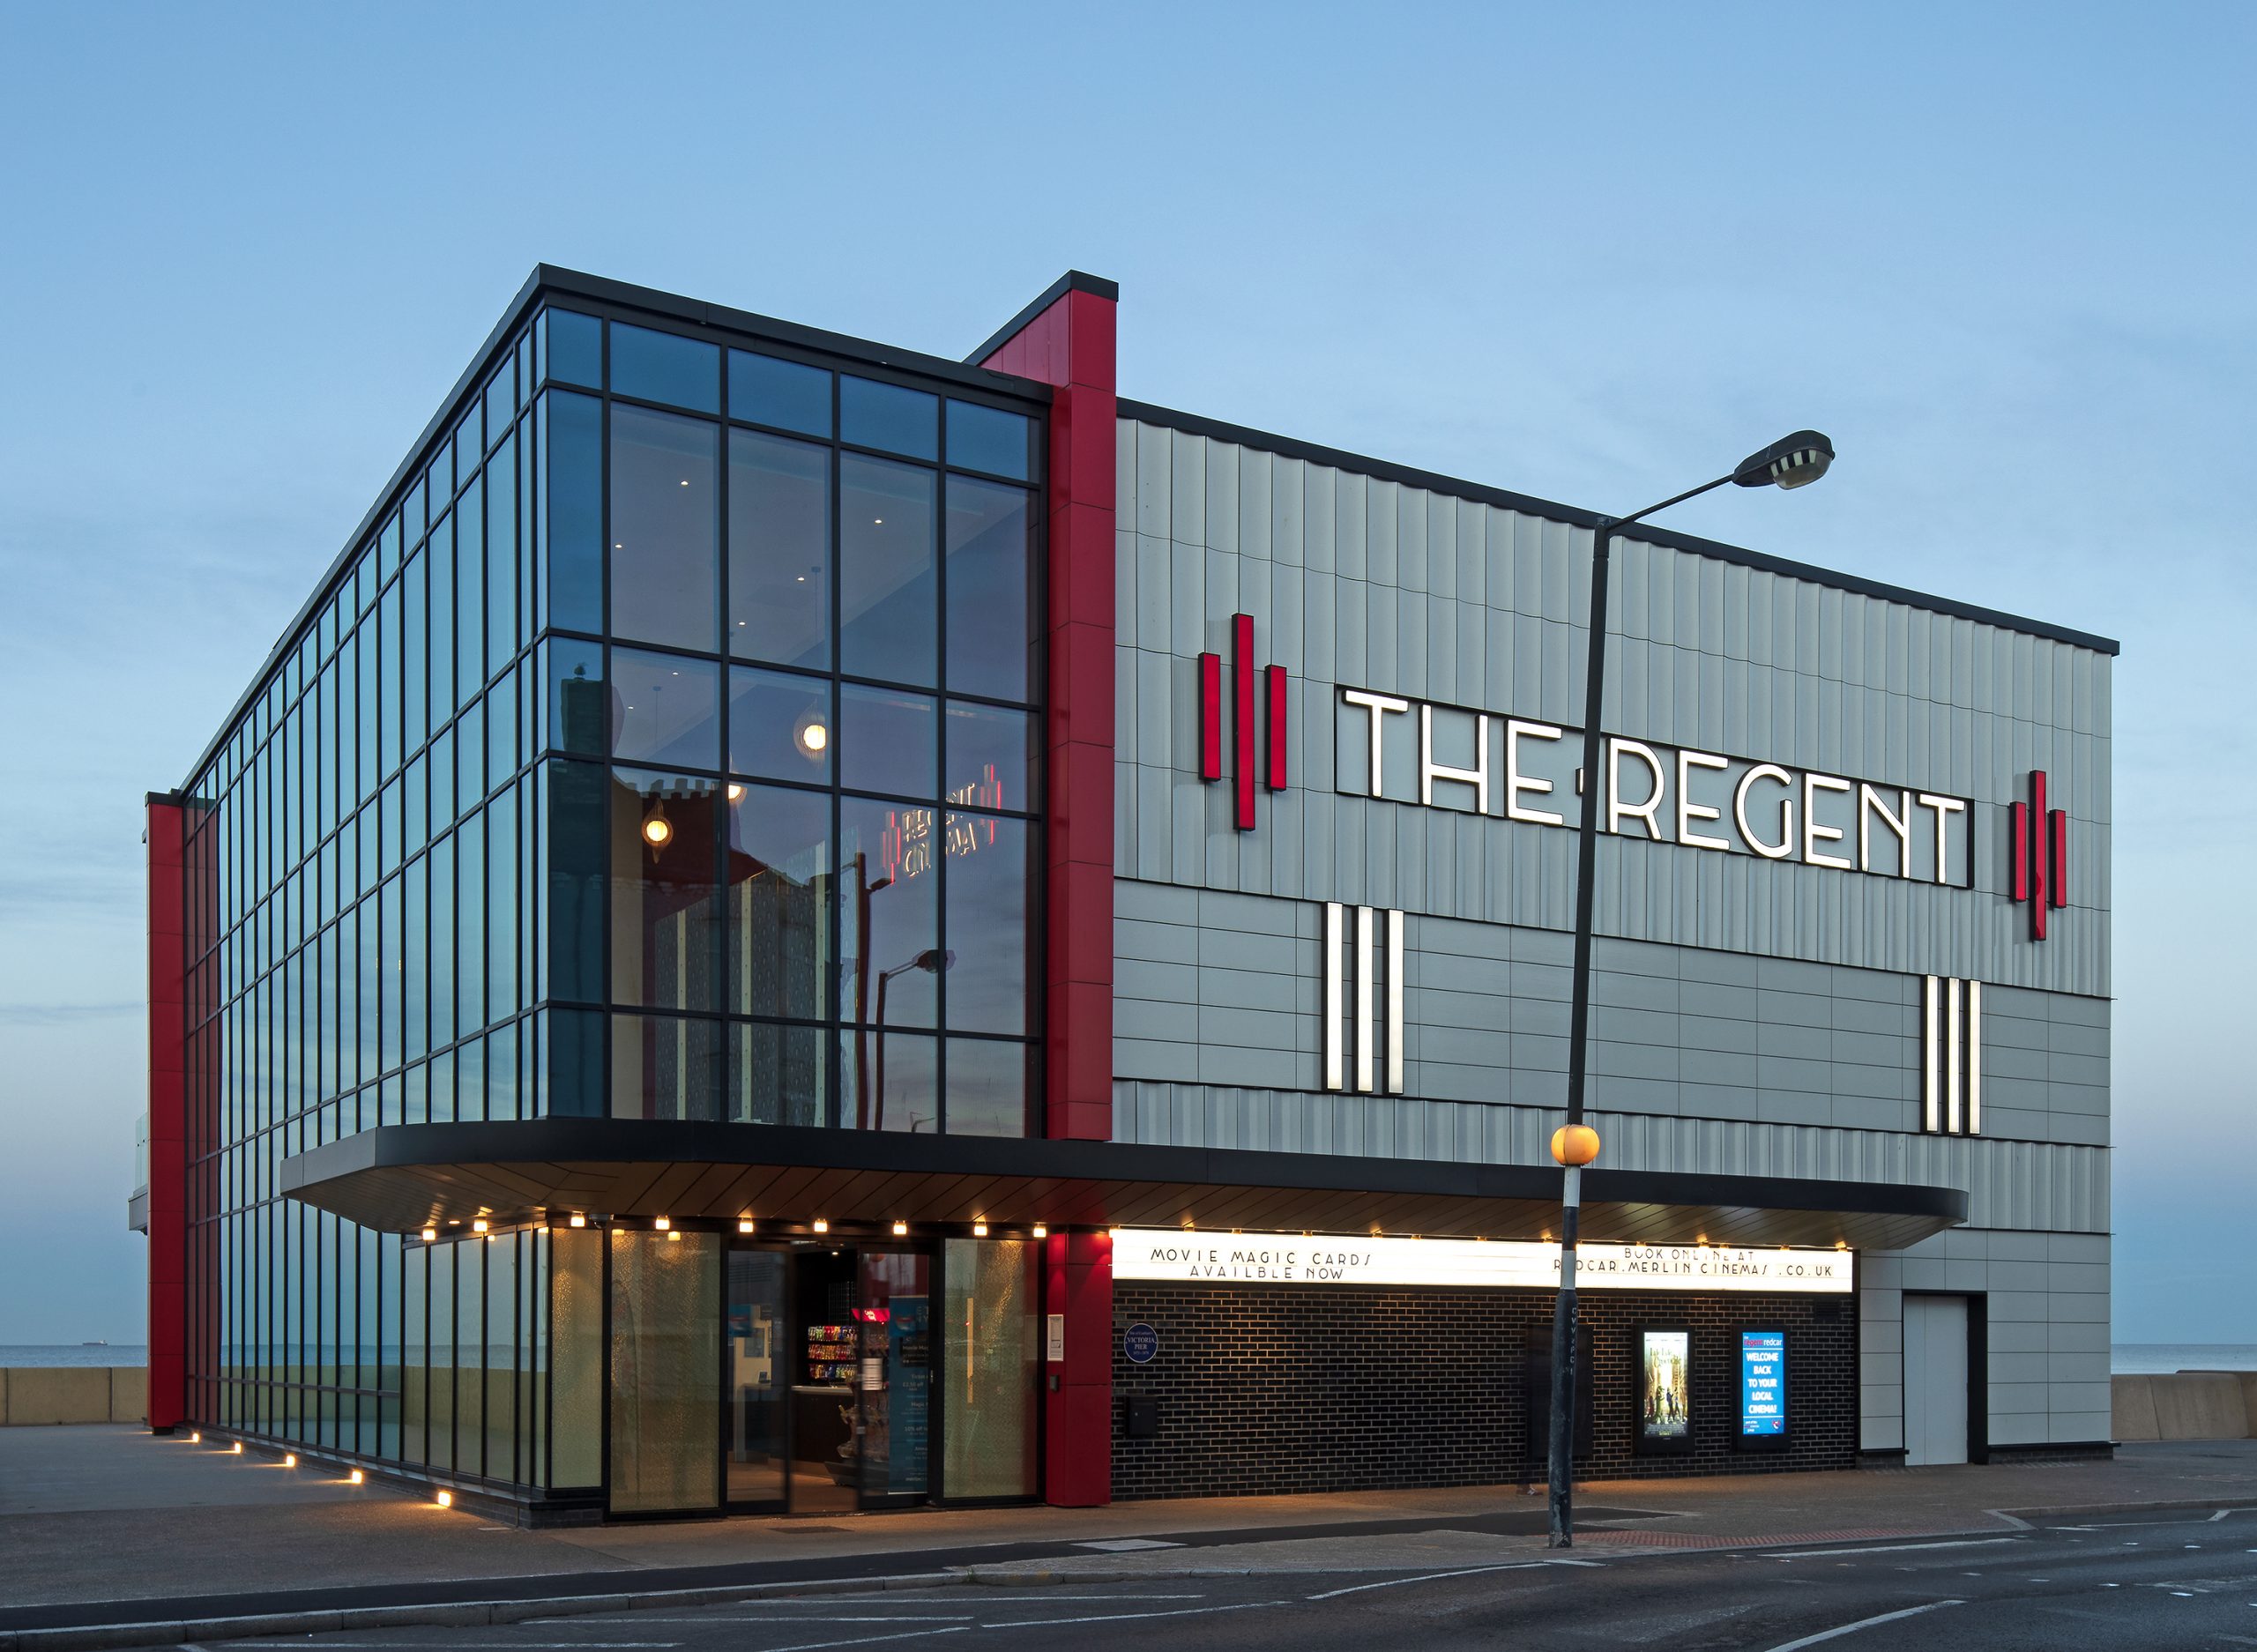 Extrnal view of Regent Cinema Redcar